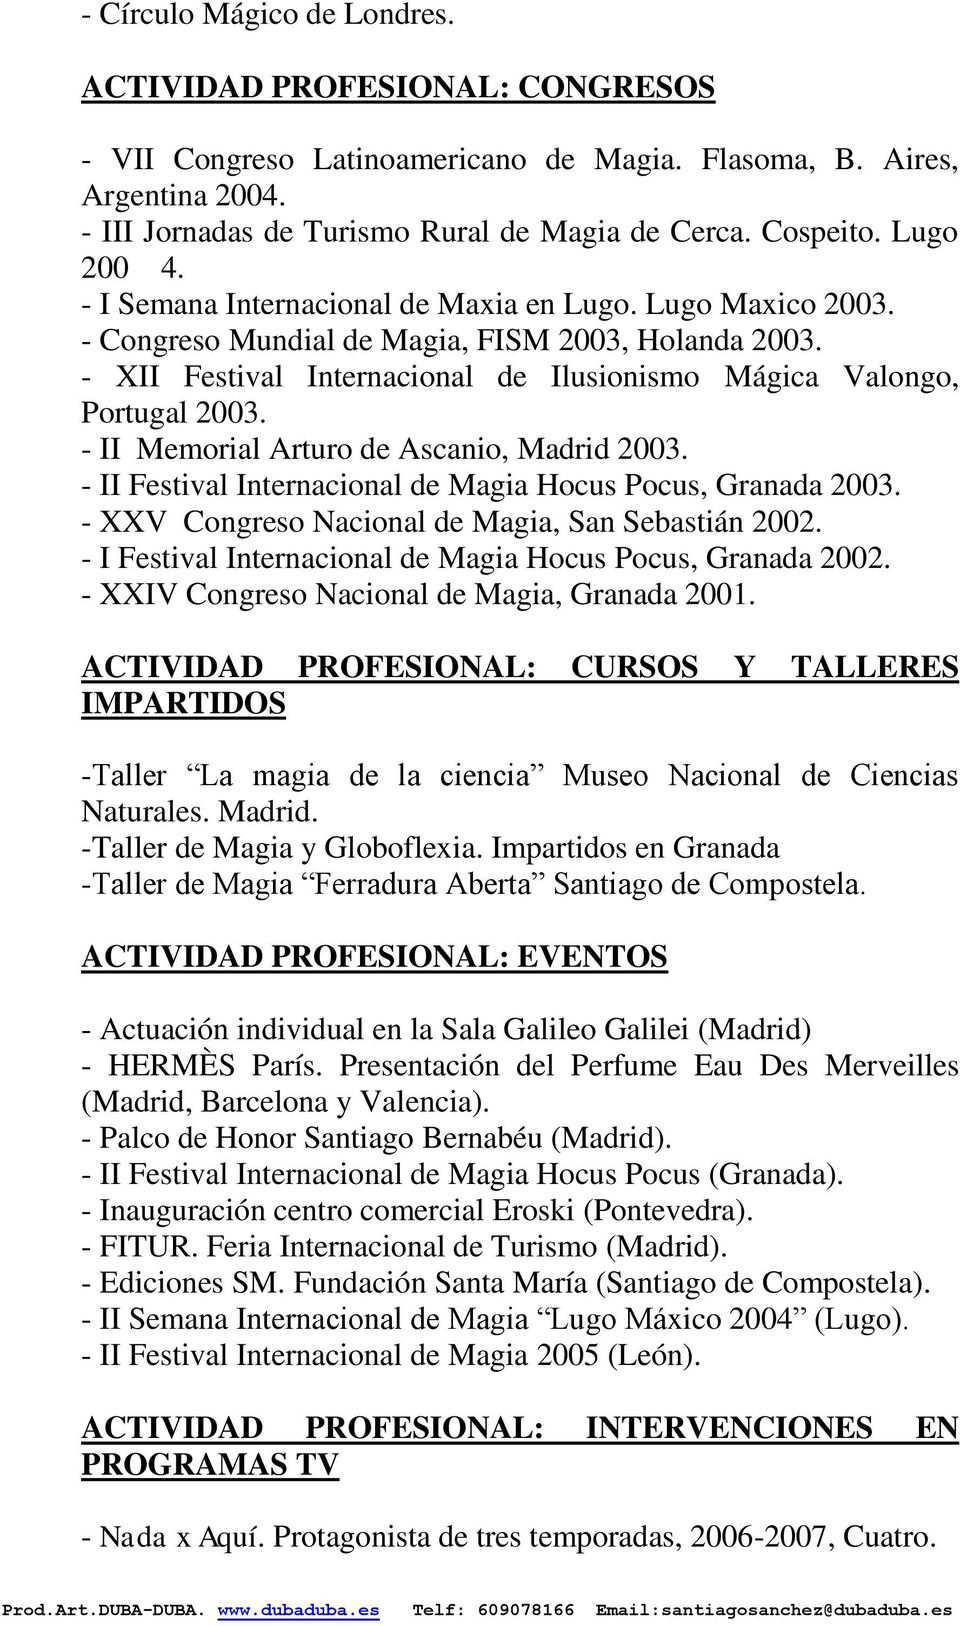 - XII Festival Internacional de Ilusionismo Mágica Valongo, Portugal 2003. - II Memorial Arturo de Ascanio, Madrid 2003. - II Festival Internacional de Magia Hocus Pocus, Granada 2003.